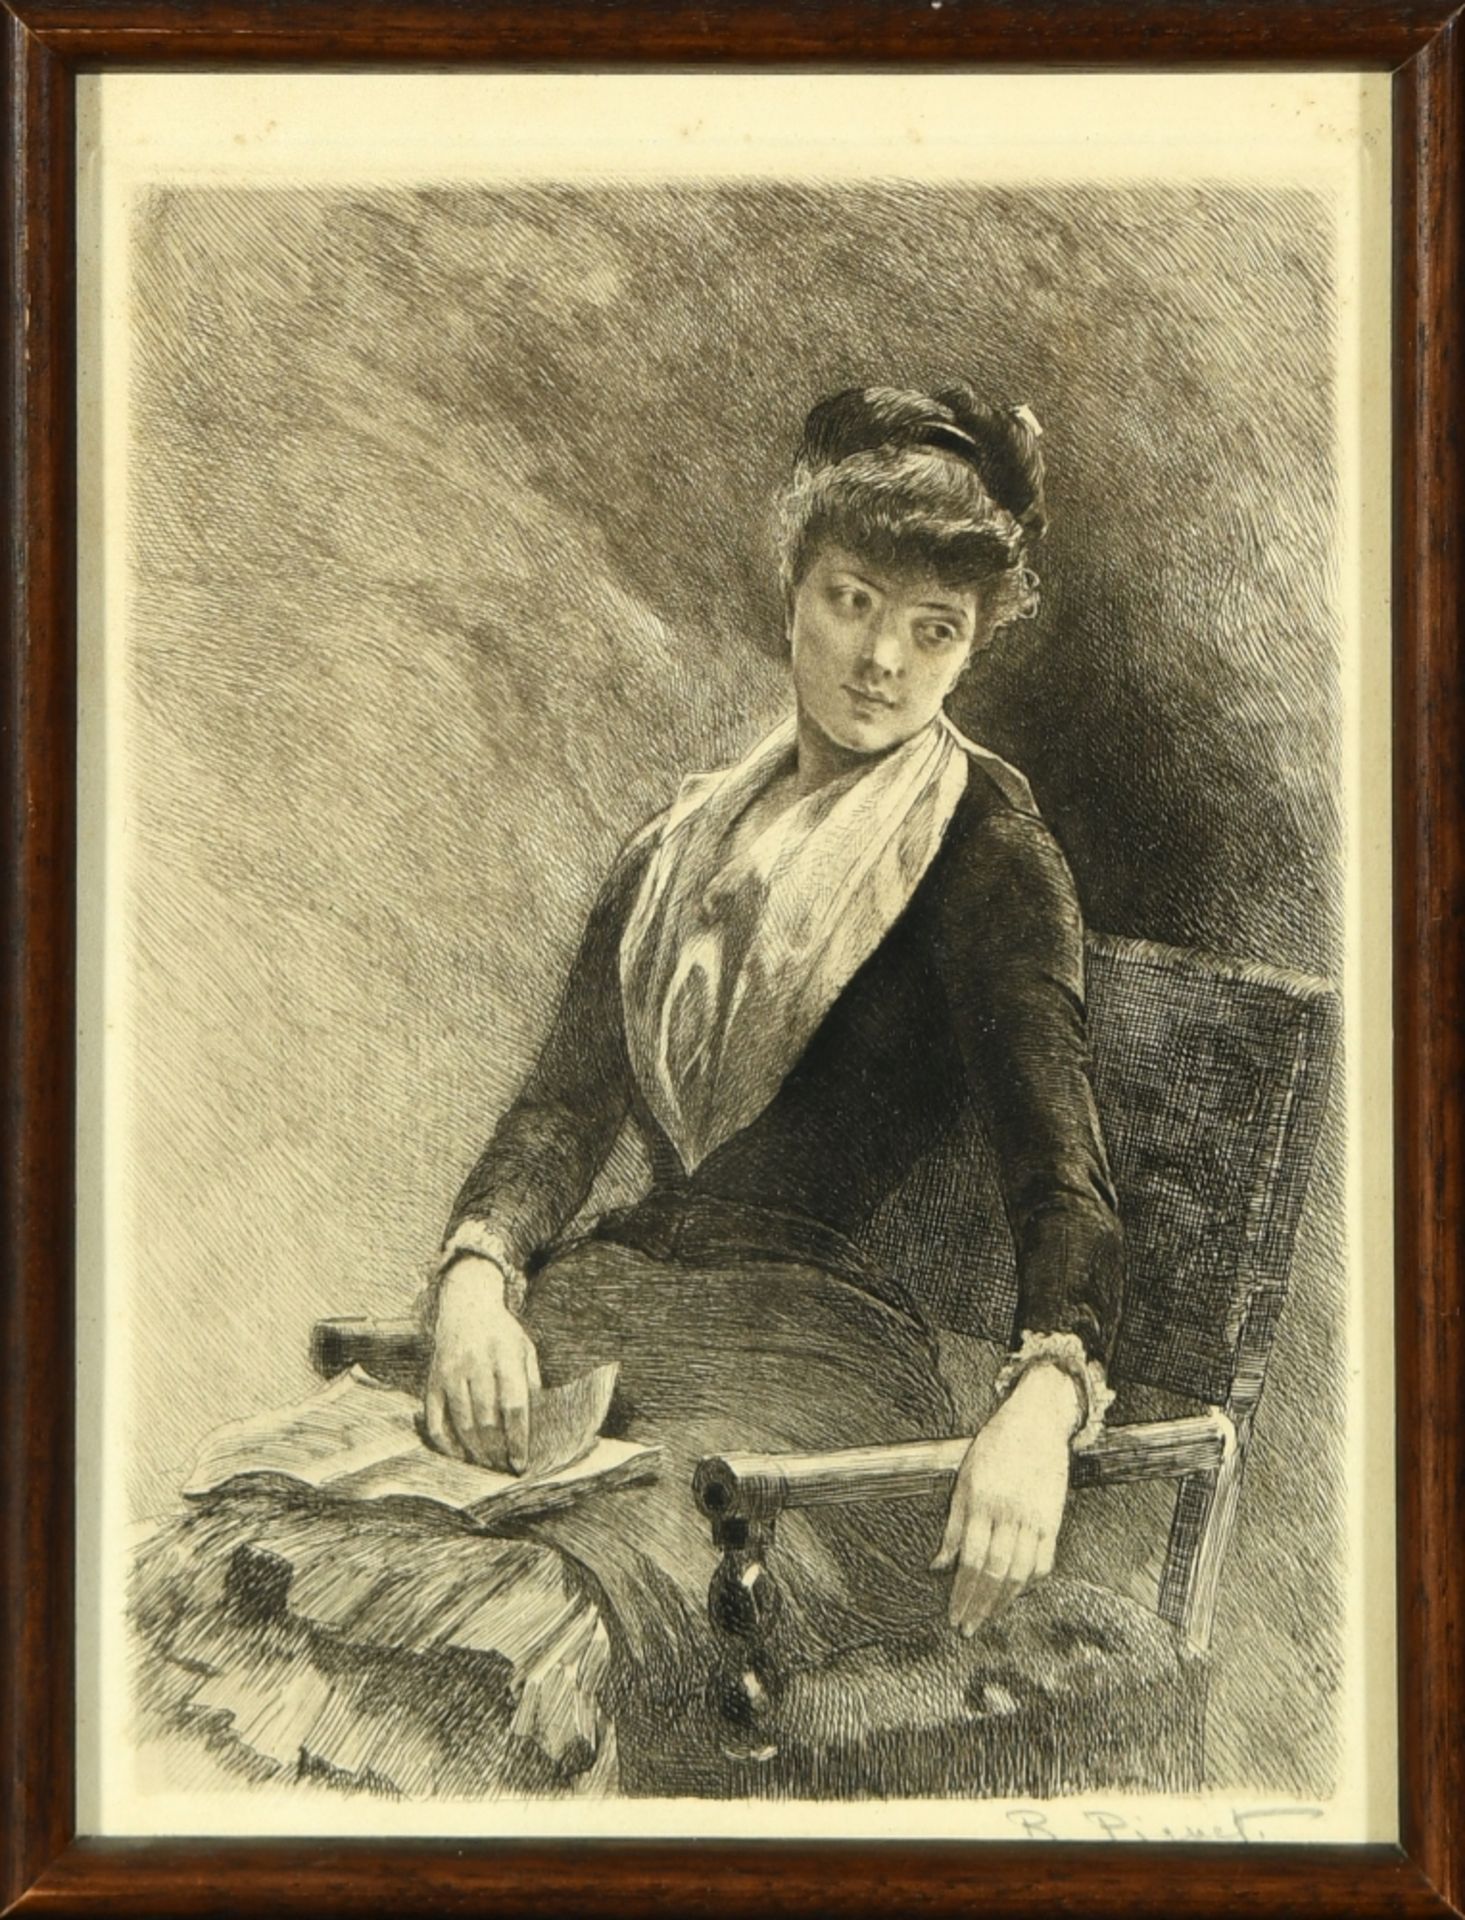 Piguet, Rodolphe, 1840 - 1915